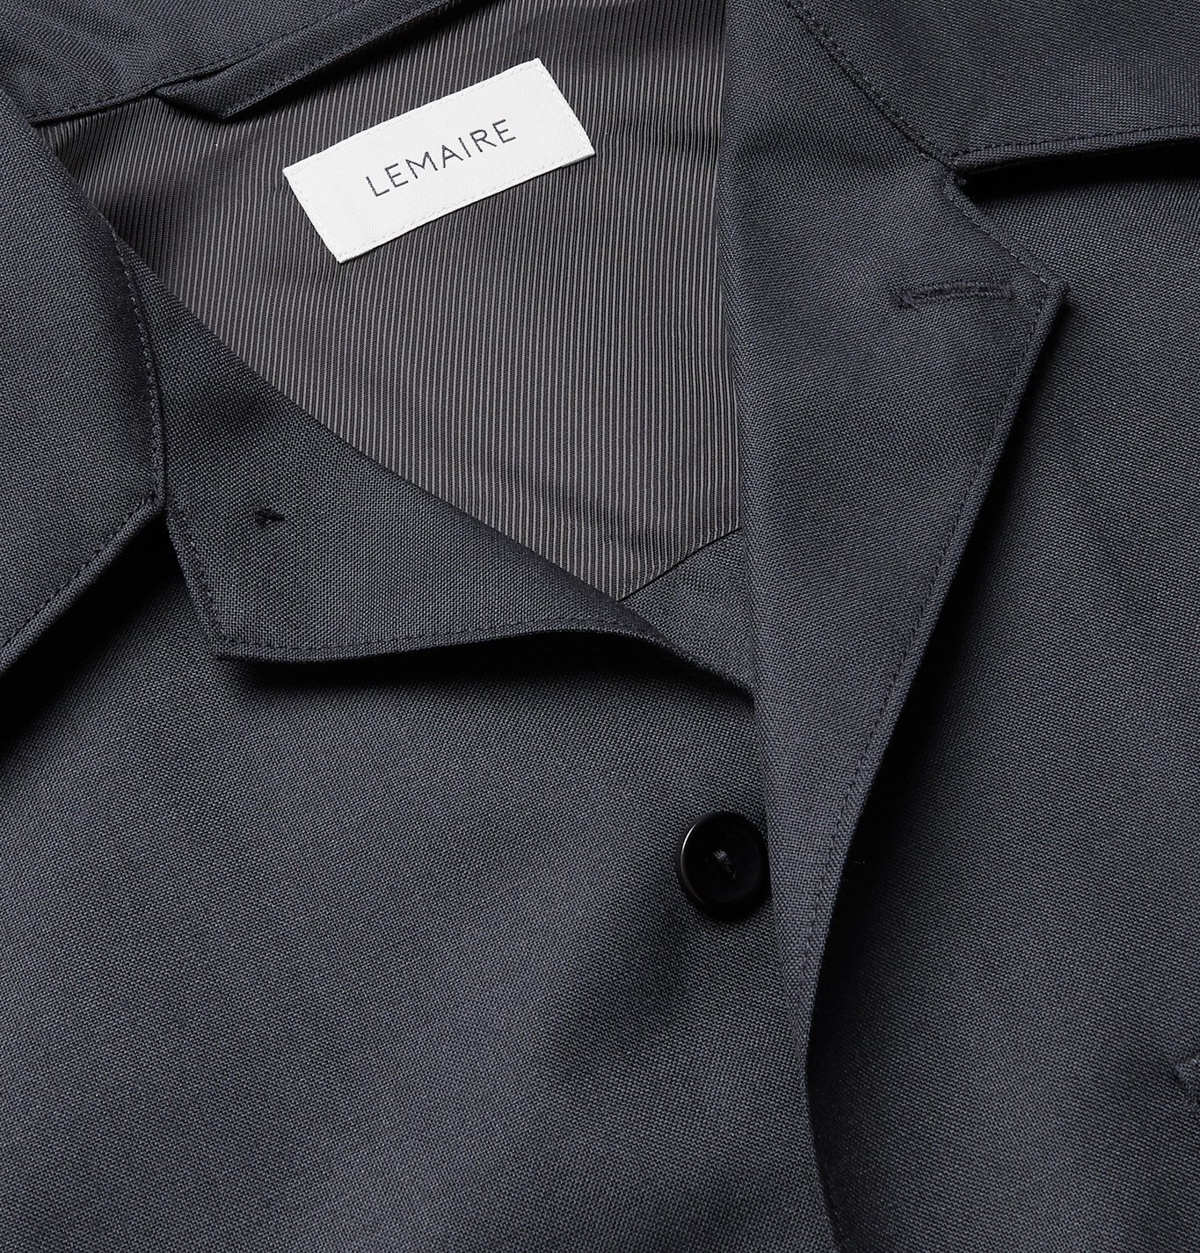 Lemaire - Convertible-Collar Tech-Virgin Wool Shirt - Gray Lemaire